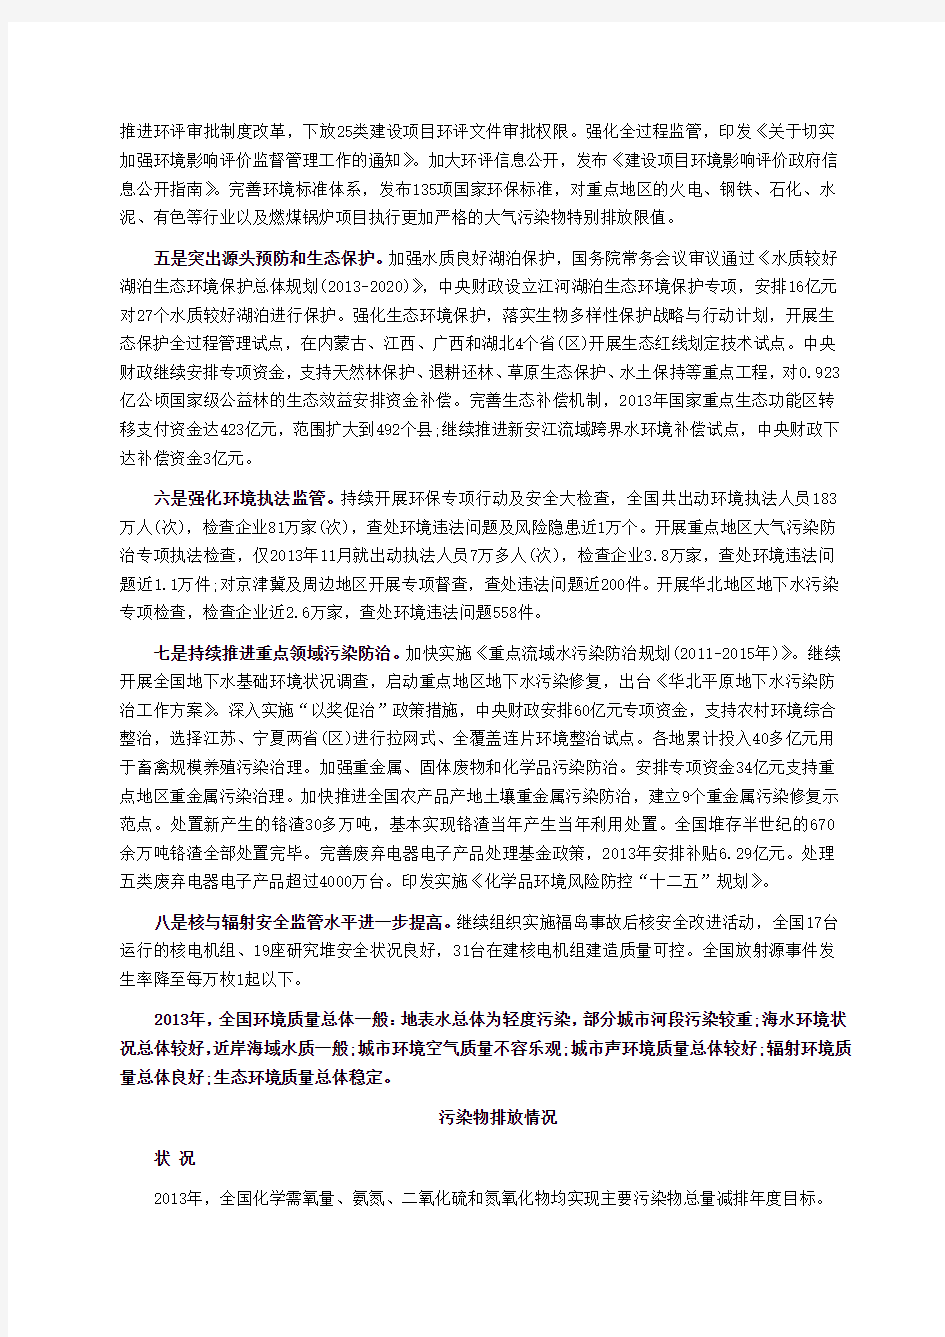 2013中国环境状况公报(图文全)